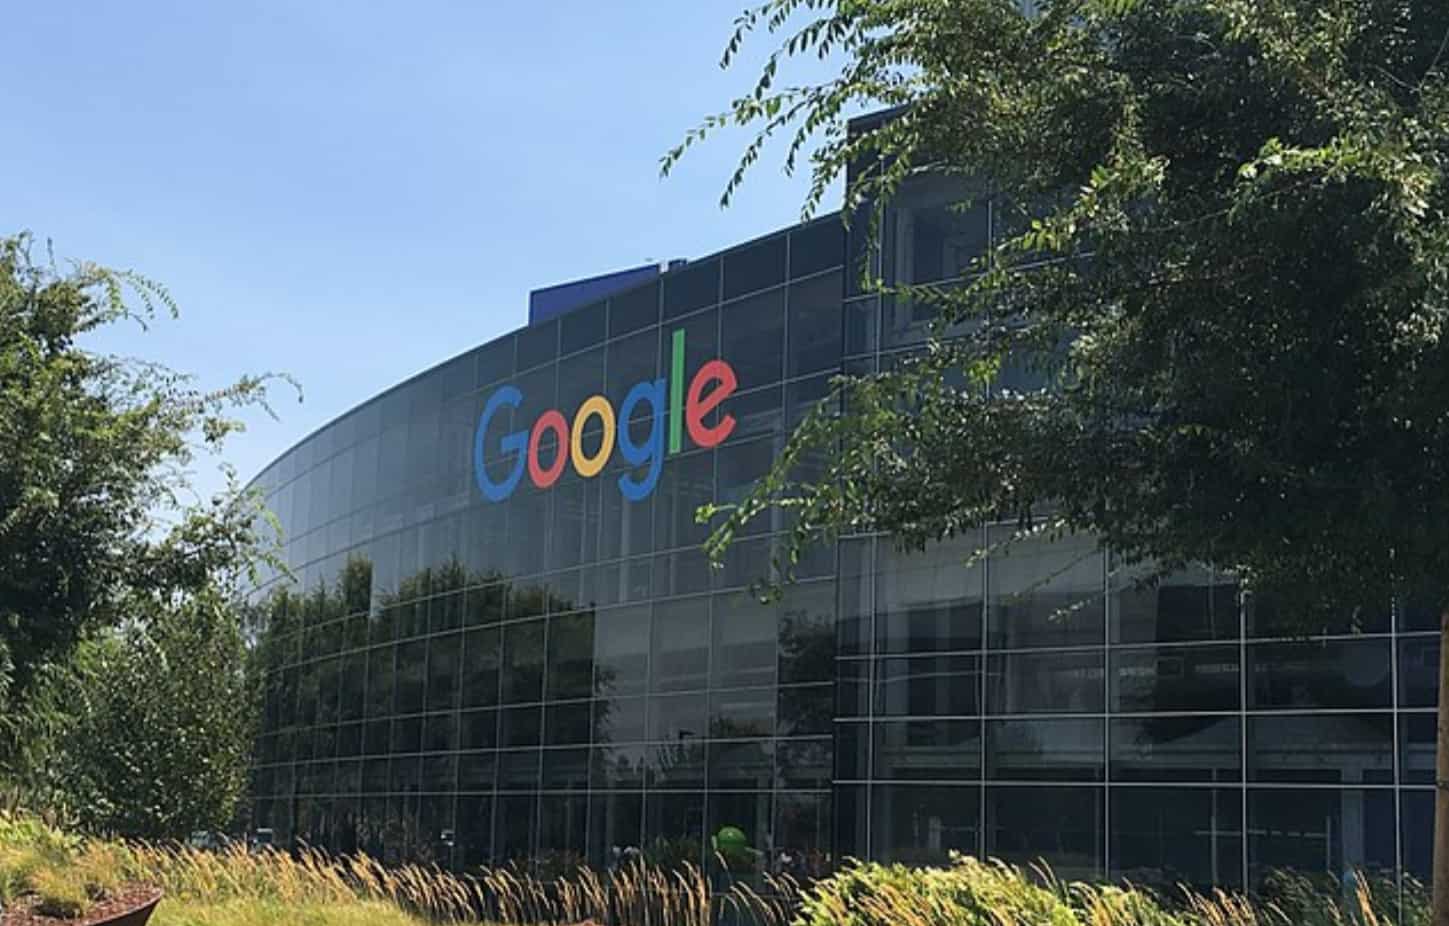 Google-HQ